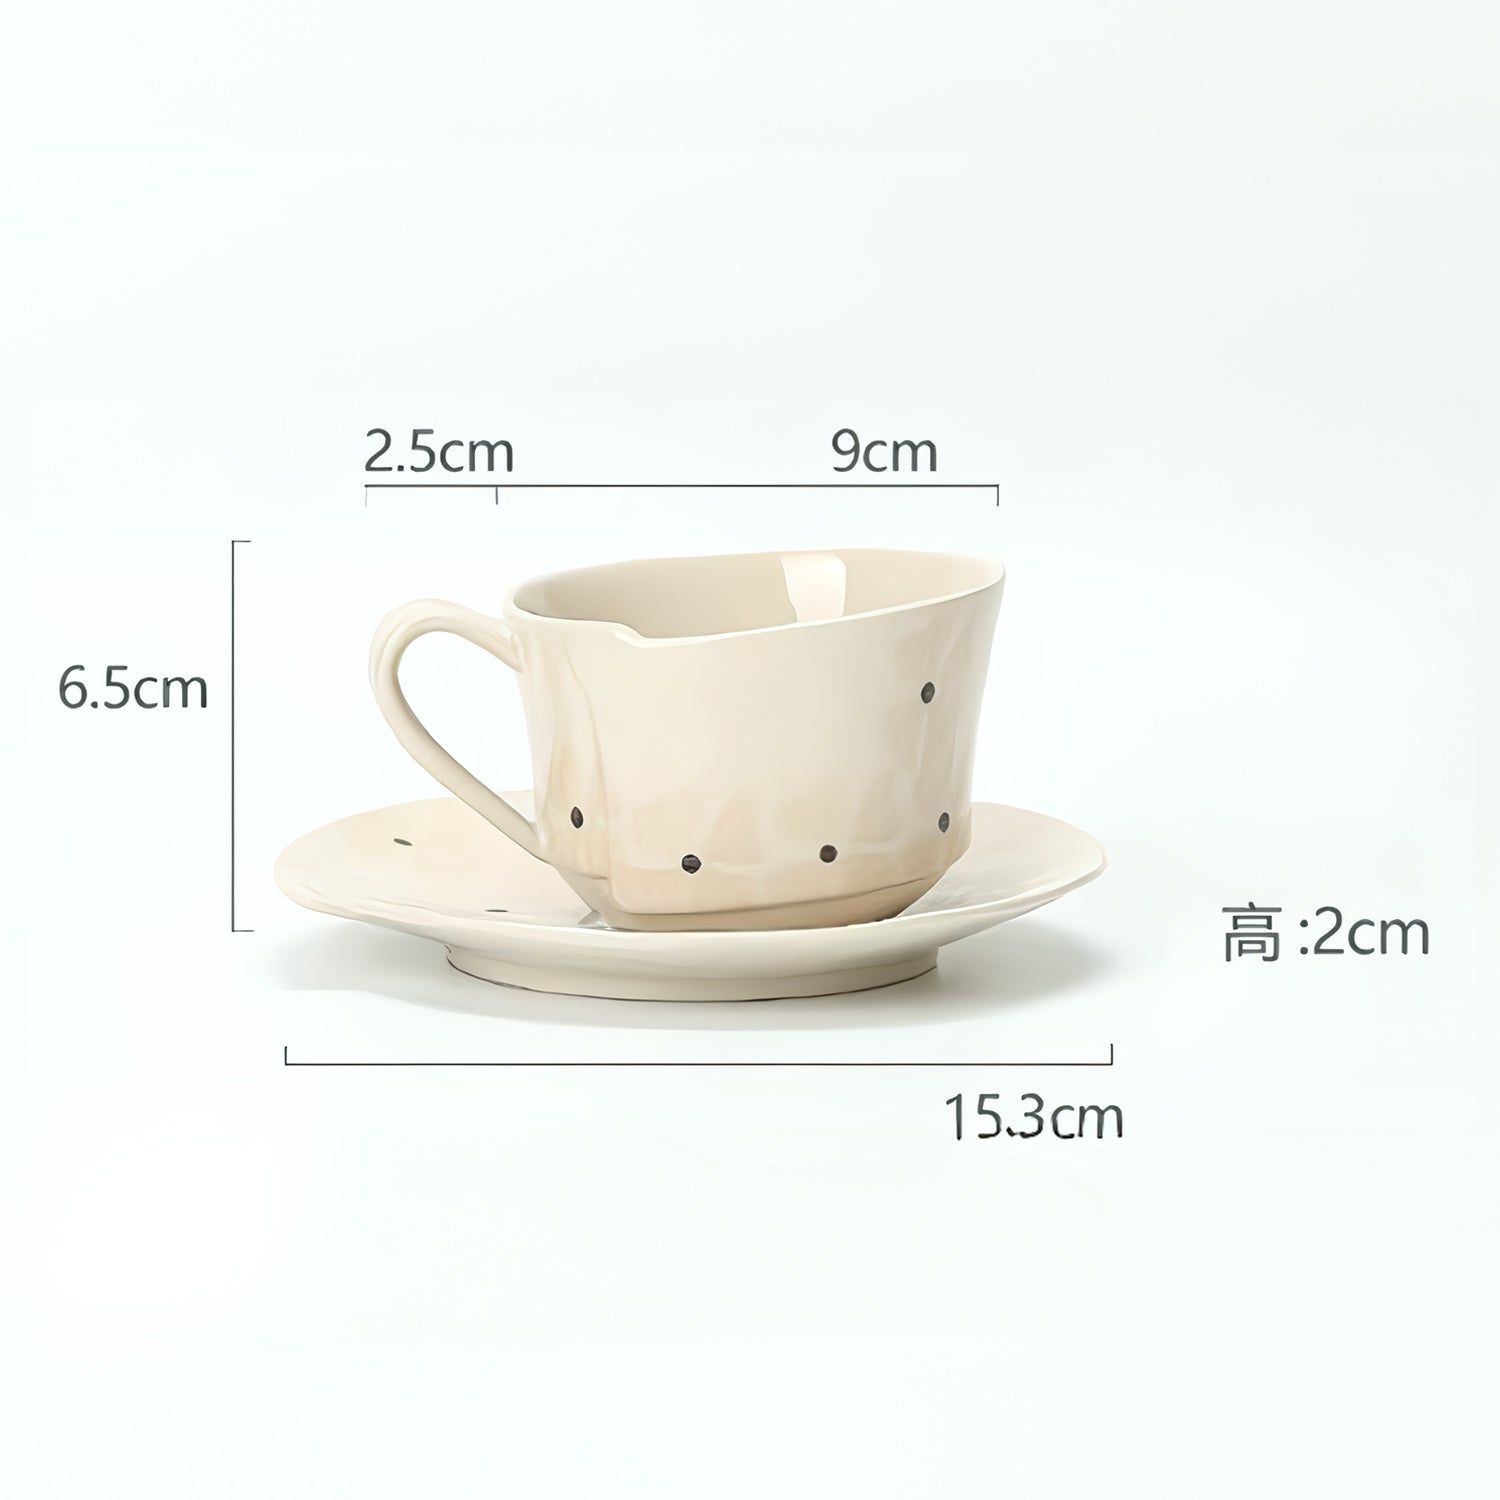 コーヒーカップ 食器 陶器コーヒーカップ 食器 おすすめ ペアコーヒーカップ 食器 おすすめ 紅茶コーヒー カップ 食器北欧 人気コーヒーカップ 食器 おしゃれ 日本コーヒー カップ 食器おすすめ 日本 コーヒー カップ 食器おしゃれコーヒー カップ 食器ブランド 作家コーヒー カップ 食器ブランド 高級コーヒー カップ 食器陶器 カフェコーヒーカップ 食器 陶器 ガラスコーヒー カップ 食器おしゃれ サイズ コーヒー カップ 食器ブランドコーヒー カップ 食器陶器 マークコーヒー カップ 食器おしゃれ ギフトコーヒー カップ 食器北欧 薄いコーヒーカップ 食器 ソーサー 男性コーヒーカップ 食器 ソーサー ギフト コーヒー カップ 食器おすすめコーヒーカップ 食器 北欧 高級コーヒーカップ 食器 北欧 素材コーヒーカップ 食器 陶器 高級コーヒー カップ 食器北欧 イギリスコーヒーカップ 食器 おしゃれ サイズ コーヒー カップ 食器北欧コーヒー カップ 食器ブランド ブランドコーヒー カップ 食器ブランド 男性コーヒー カップ 食器北欧 高級コーヒー カップ 食器陶器 薄いコーヒーカップ 食器 おすすめ 男性